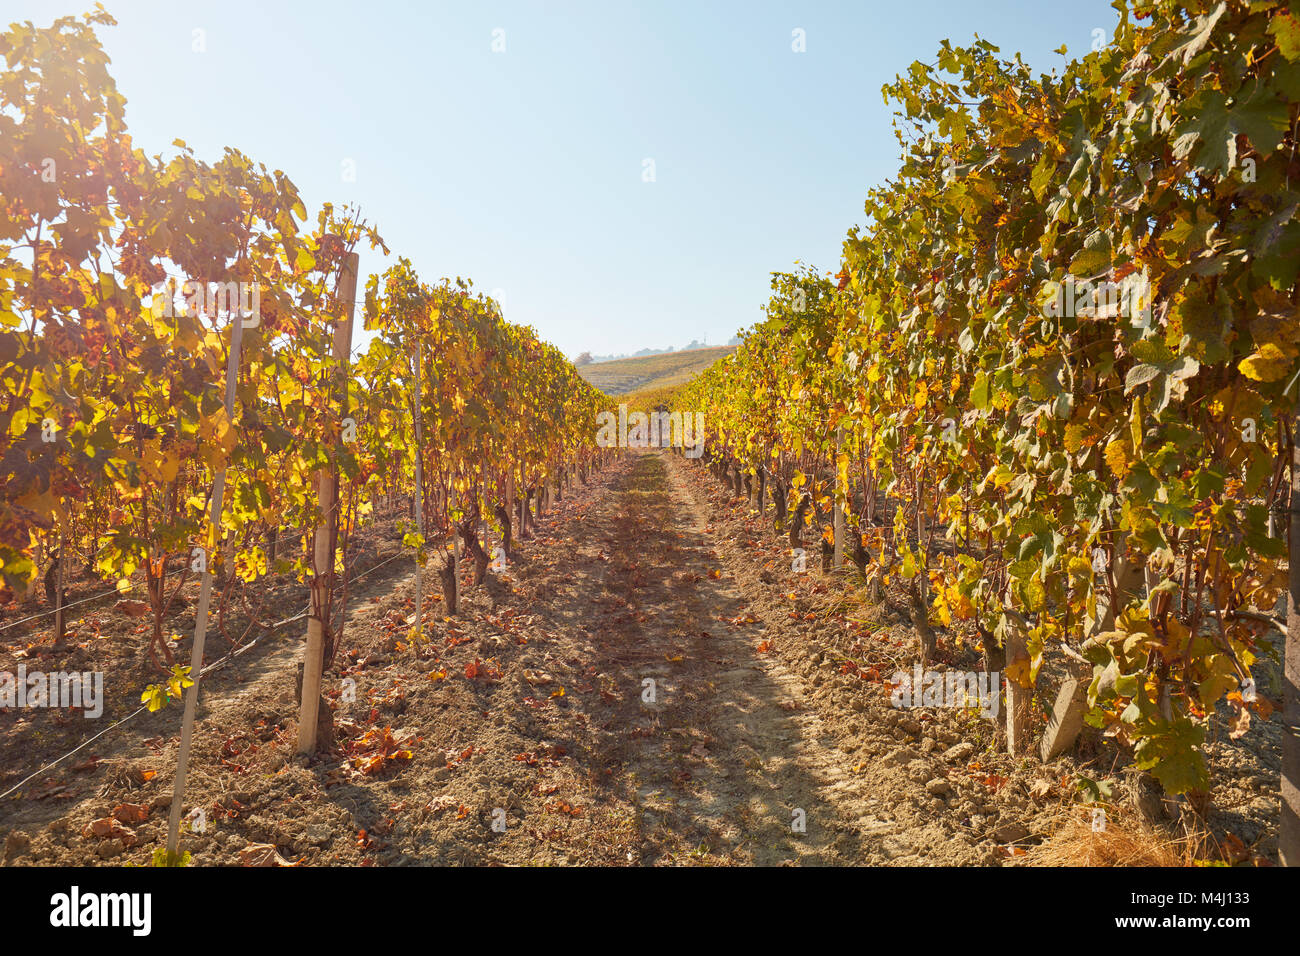 Vigneto, percorso tra due filari di viti in autunno con foglie di giallo, raggi di sole Foto Stock